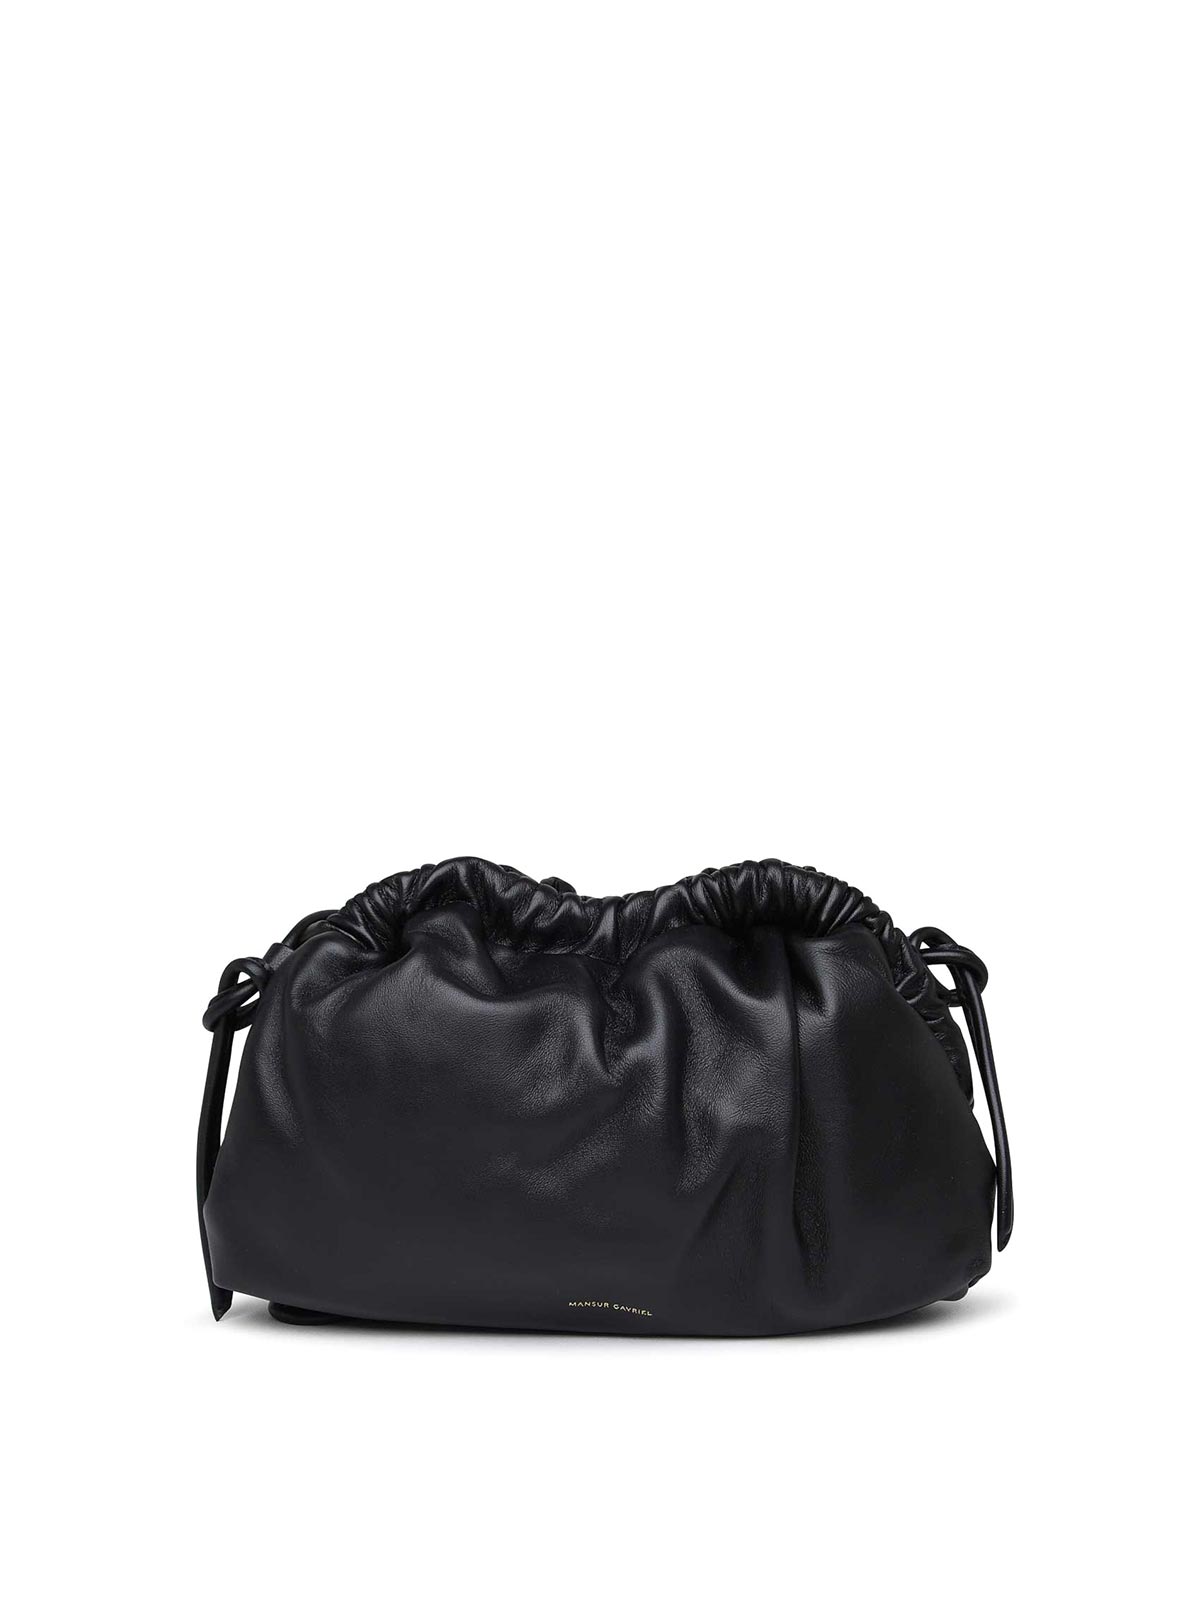 Mansur Gavriel Leather Bag In Black